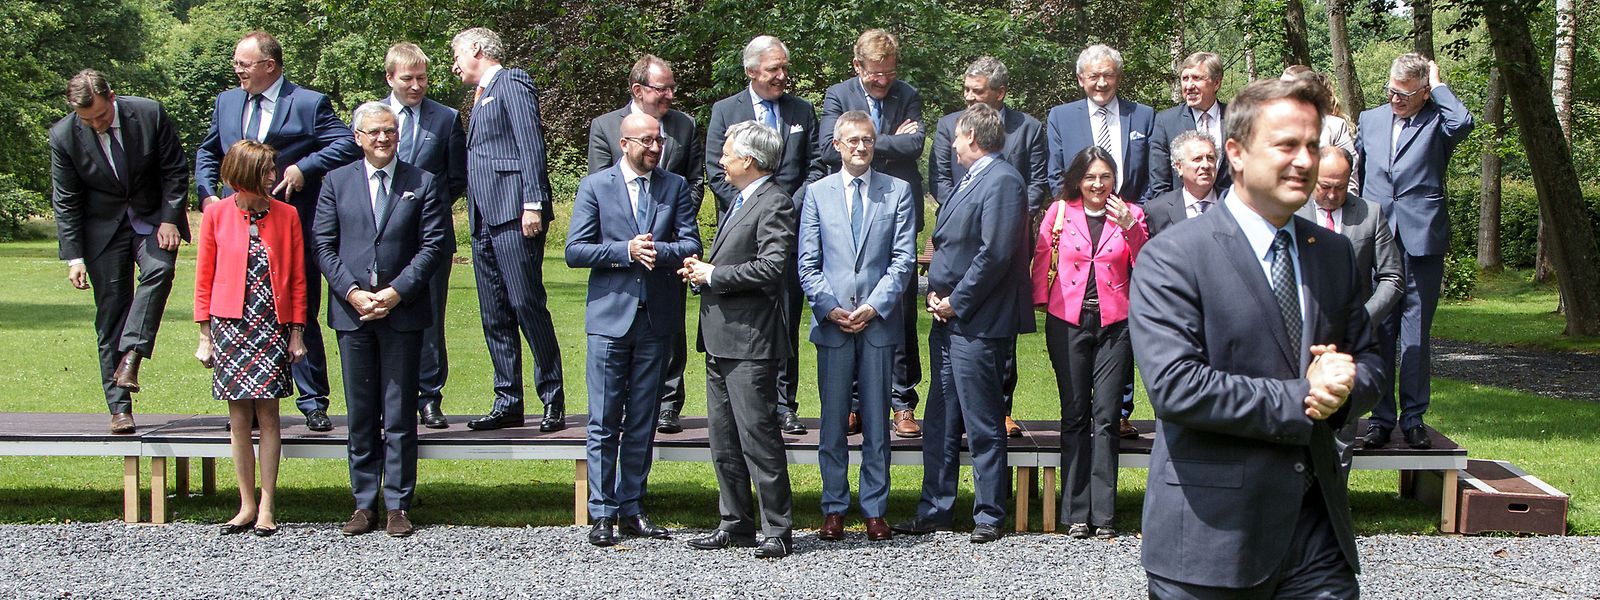 La dernière rencontre de type Gaichel s'est déroulée en juillet 2016, avec un gouvernement fédéral belge dirigé par Charles Michel.